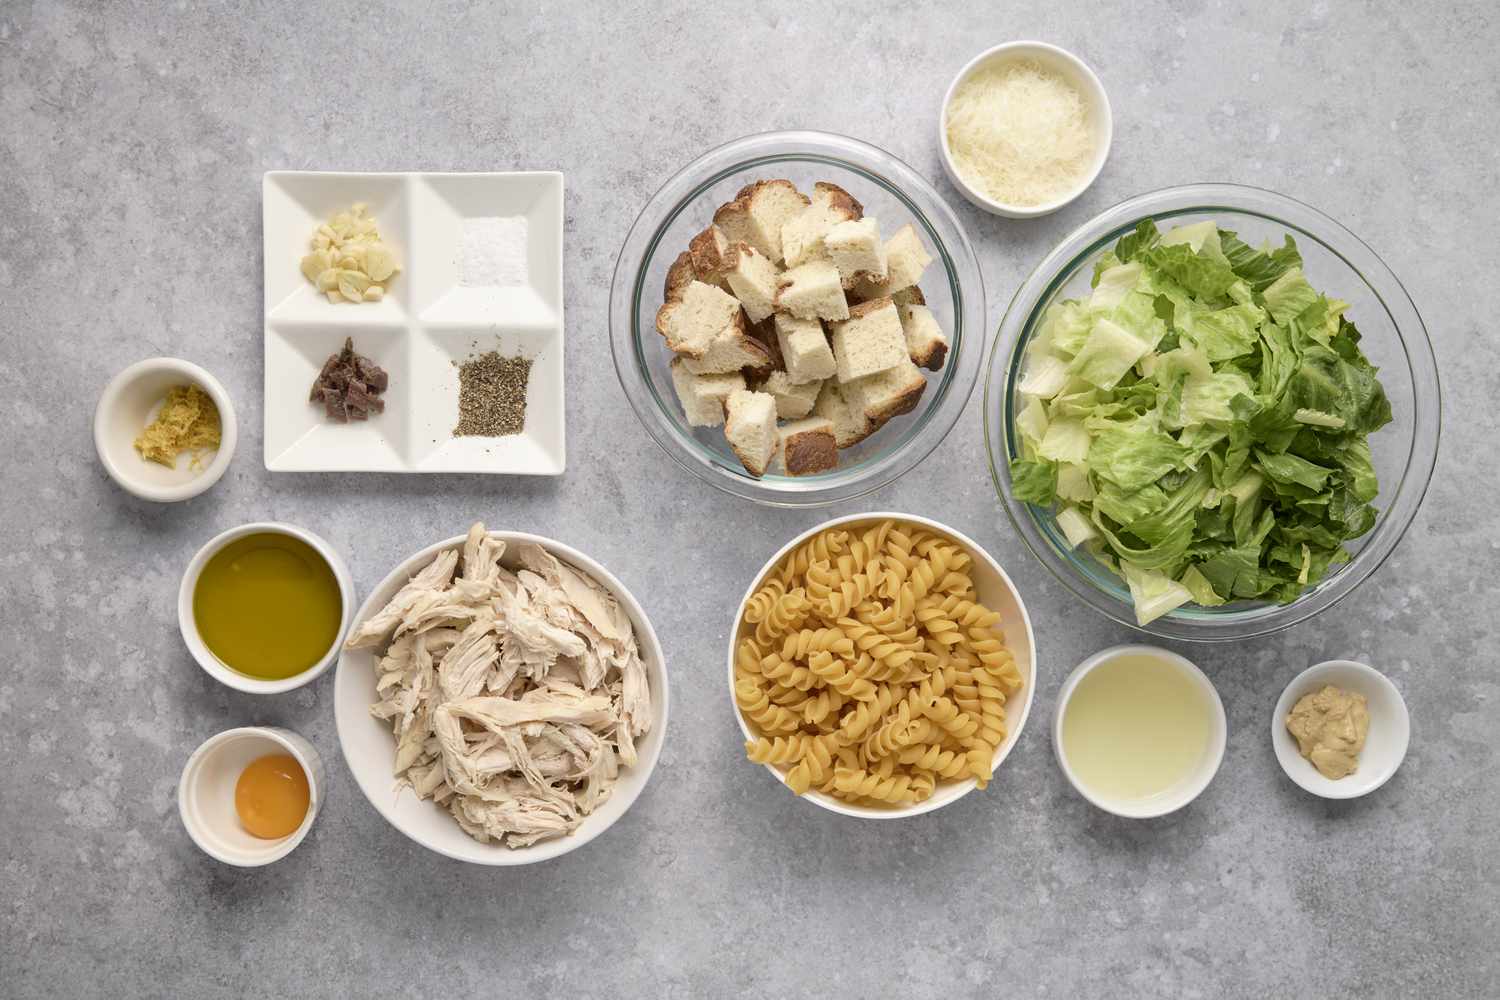 Ingredients to make chicken caesar pasta salad